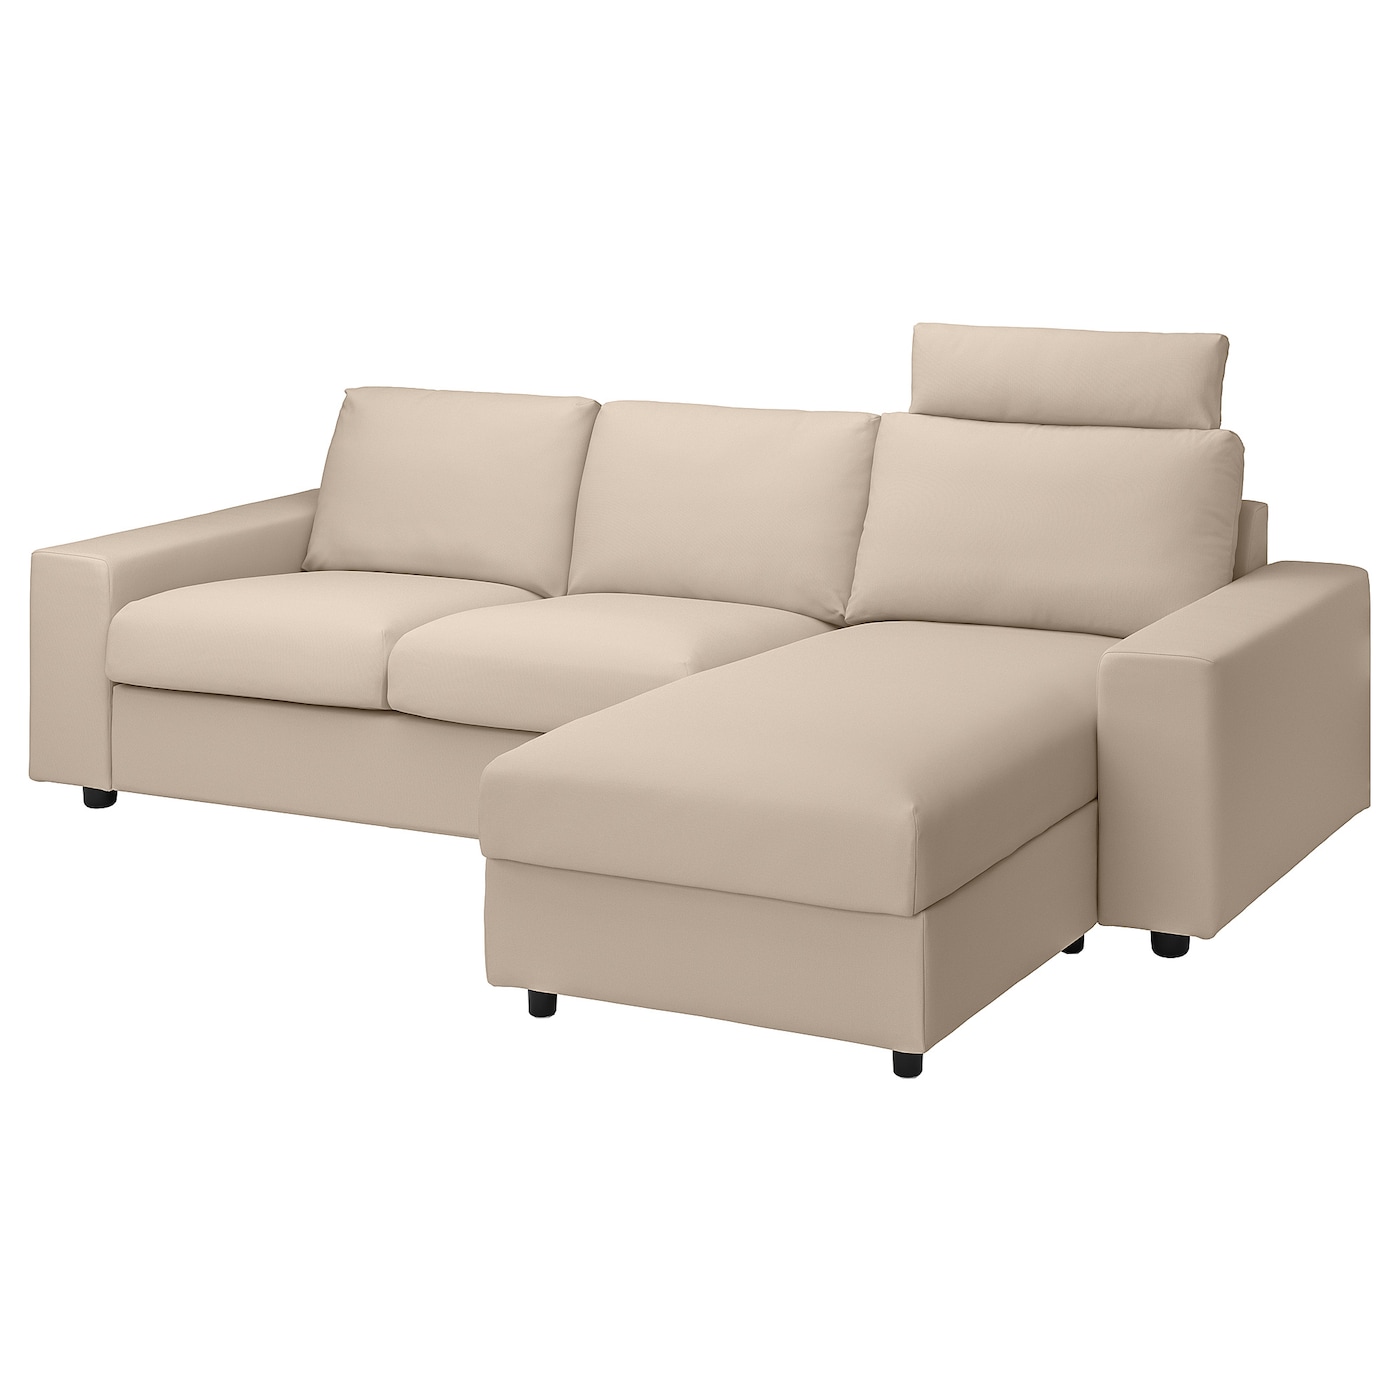 ВИМЛЕ 3-местный диван + диван, с широкими подлокотниками с подголовником/Халларп бежевый VIMLE IKEA диван прямой смарт mille 09 3 х местный с подлокотниками еврокнижка а2491530061